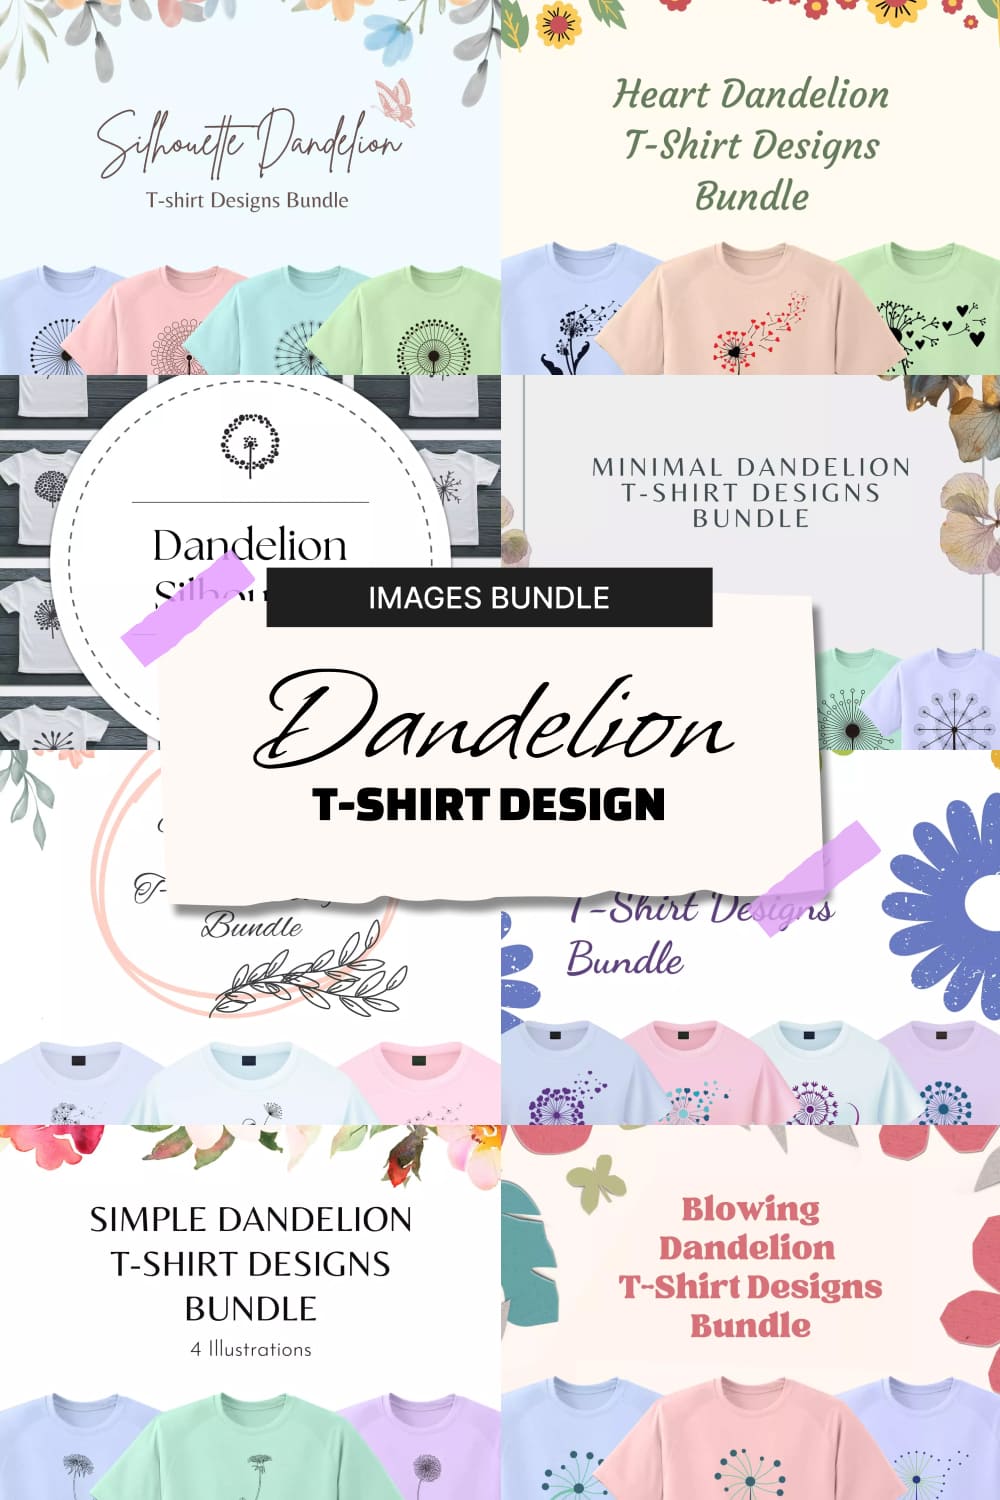 Dandelion t-shirt design images bundle, picture for Pinterest.